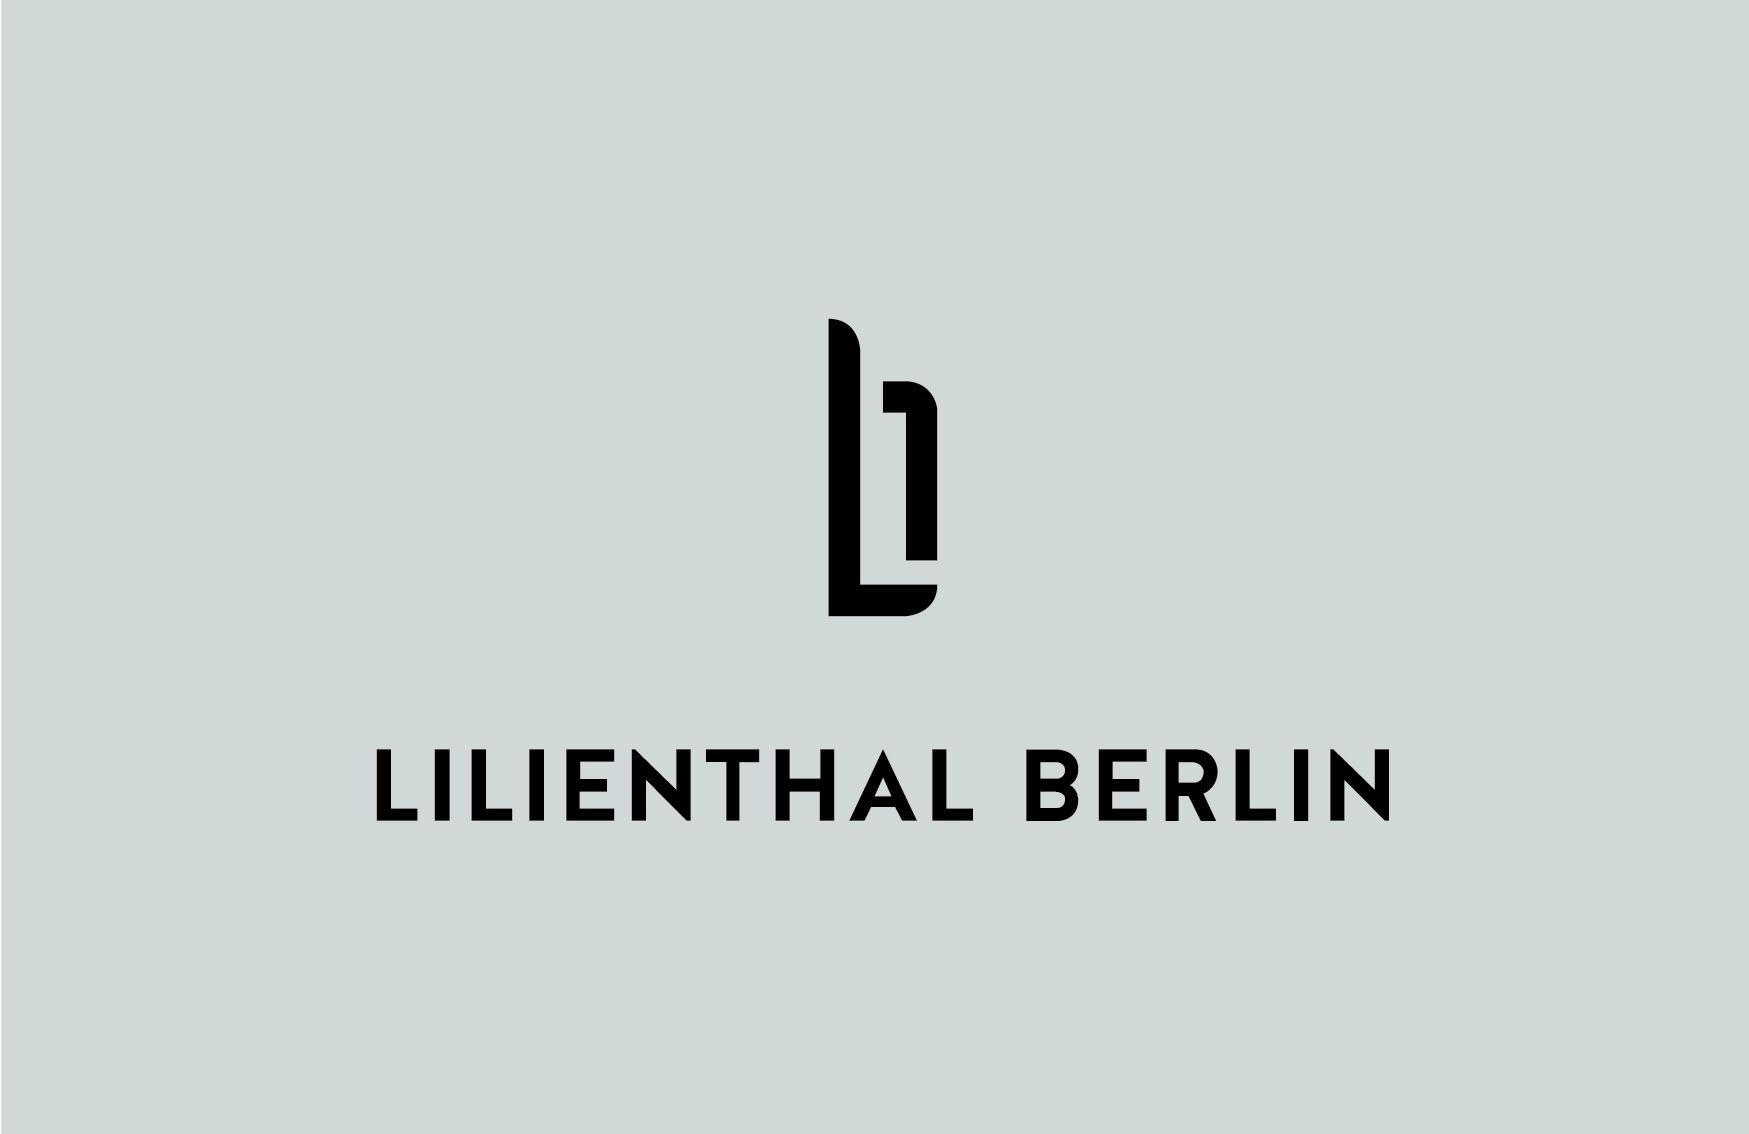 LILIENTHAL BERLIN